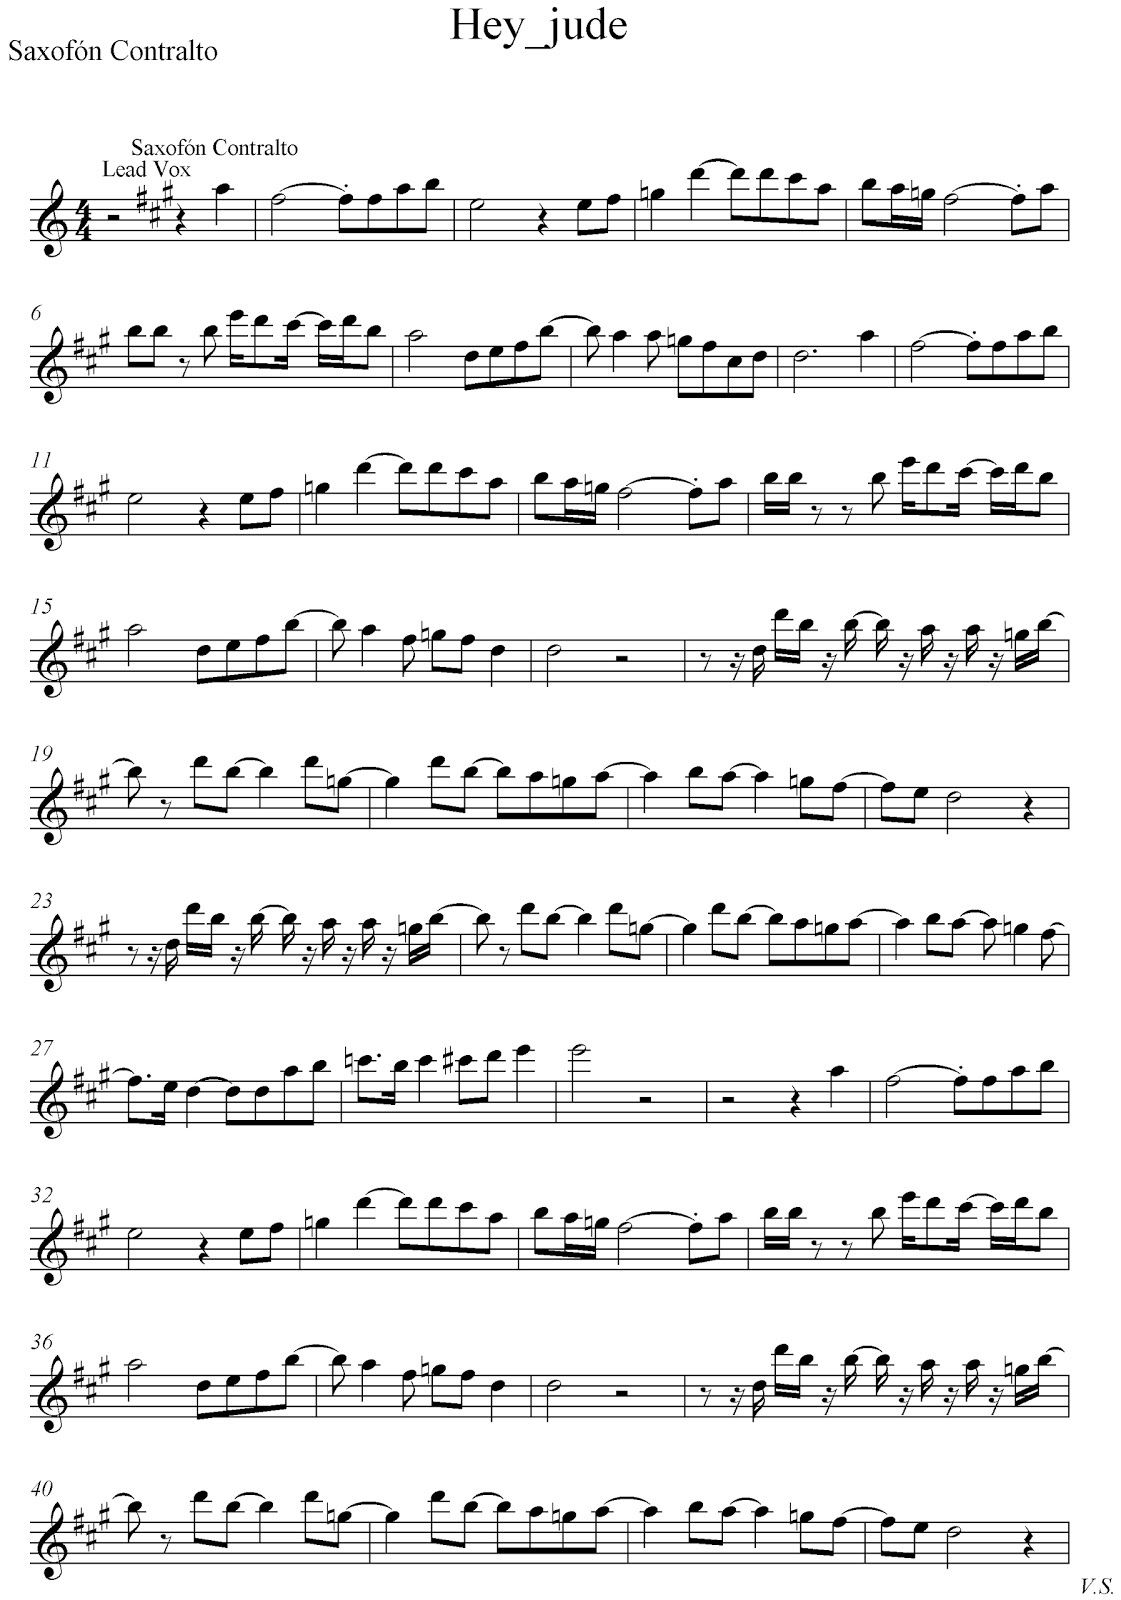 cocodrilo Promover Sociedad Pista y partitura de "Hey jude" para Saxo Alto - Partituras y pistas para  saxo | Sheet music and Play Along for sax